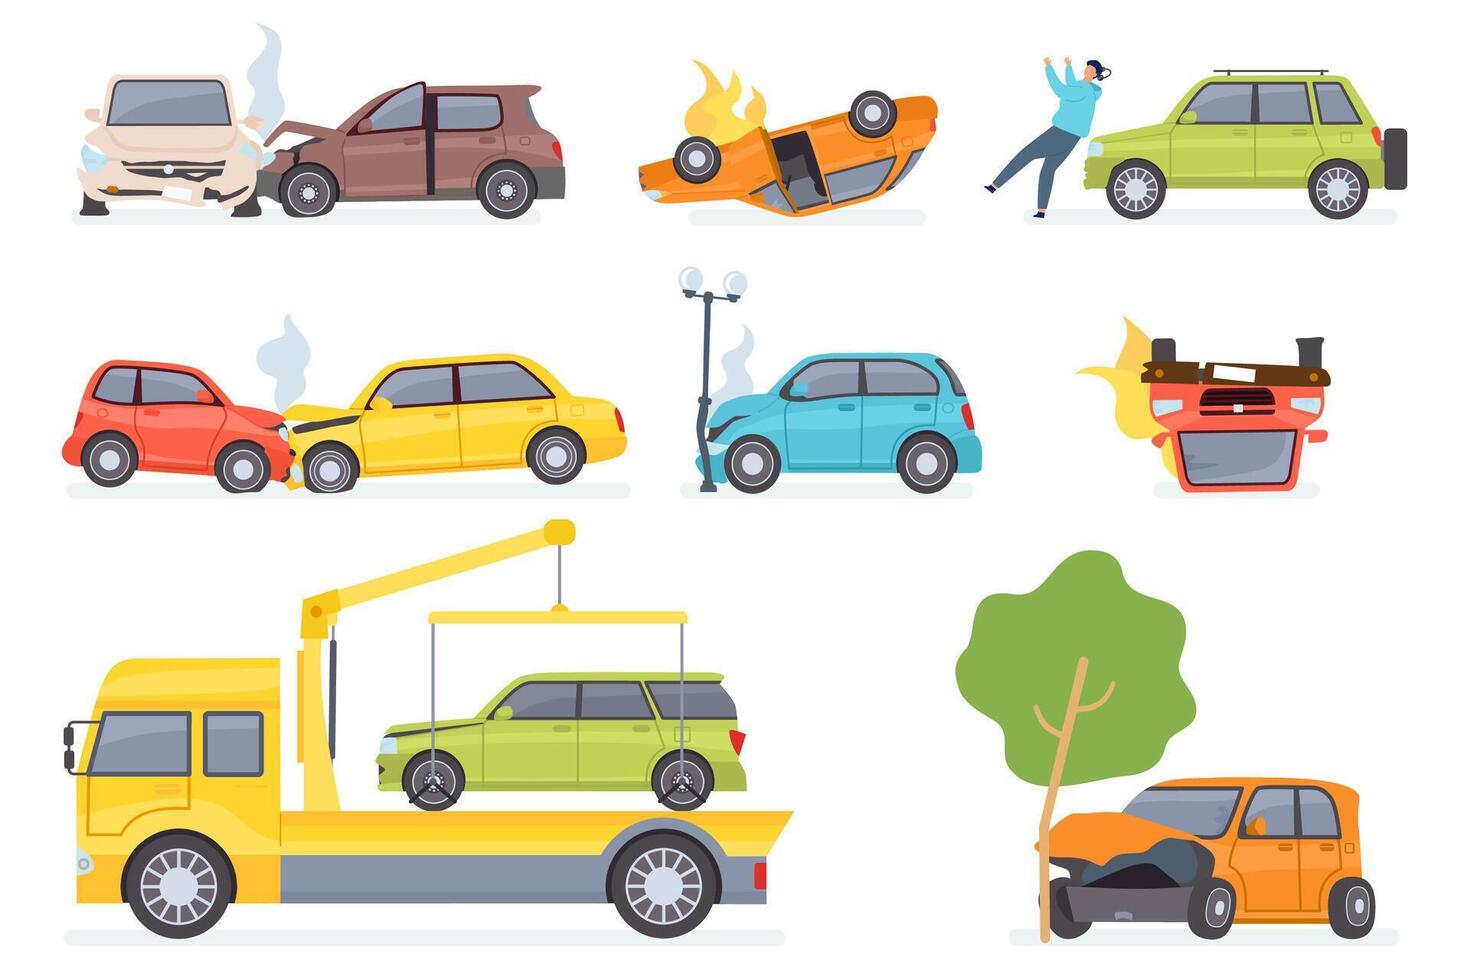 bilar olycka. försäkring transport på bogsera lastbil, bil kollision med träd eller gata ljus, slå fotgängare. fordon krascha vektor uppsättning